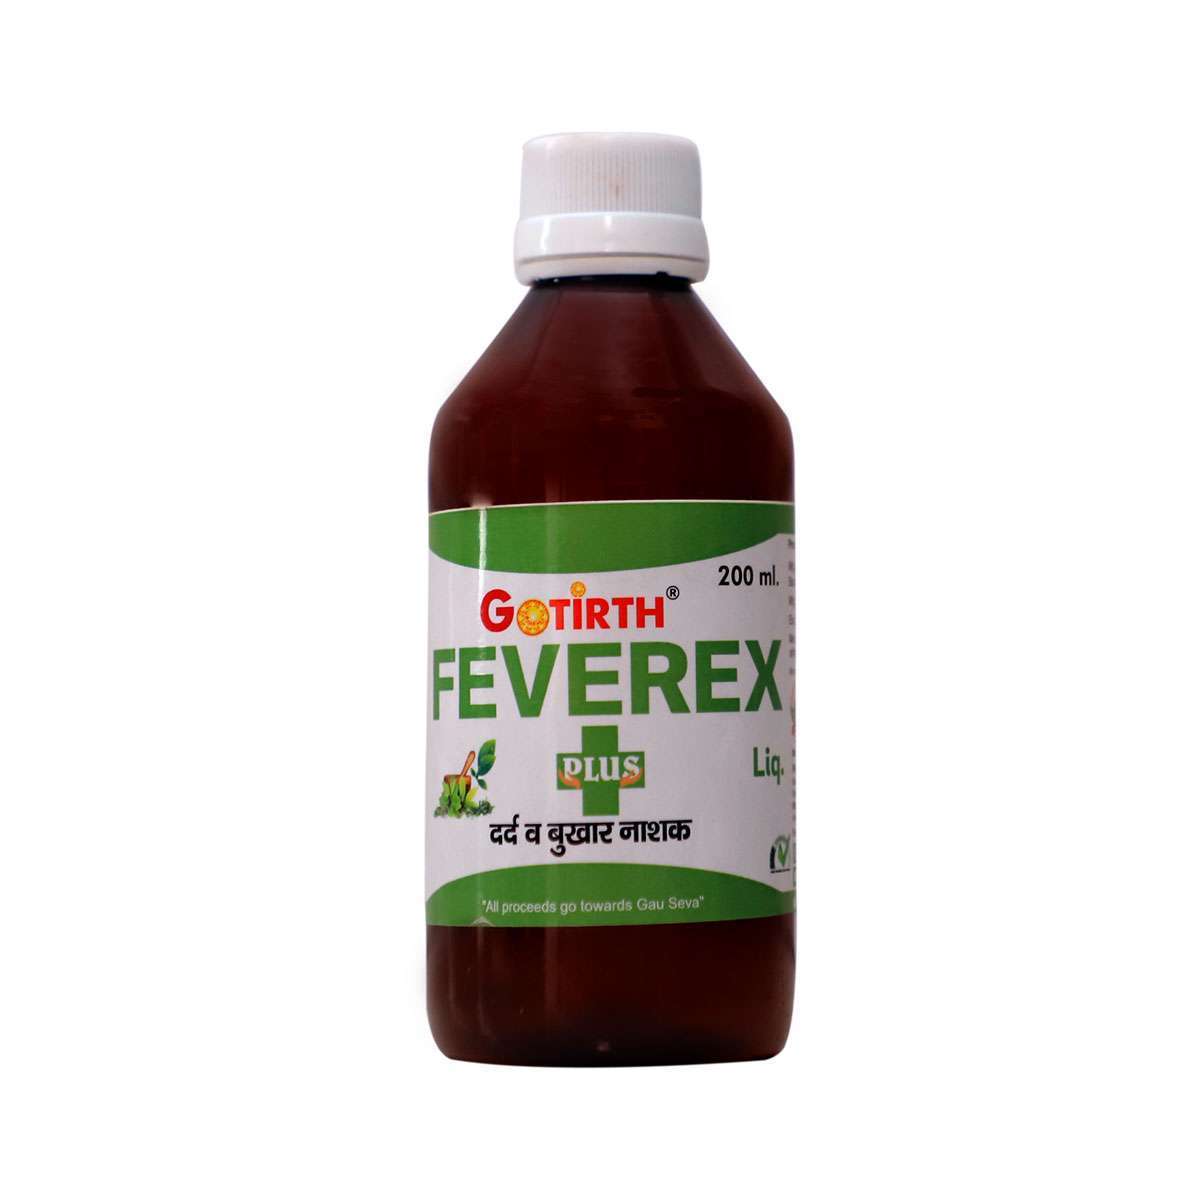 Gotirth Feverex Plus Liquid - Ayurvedic Medicine for Fever